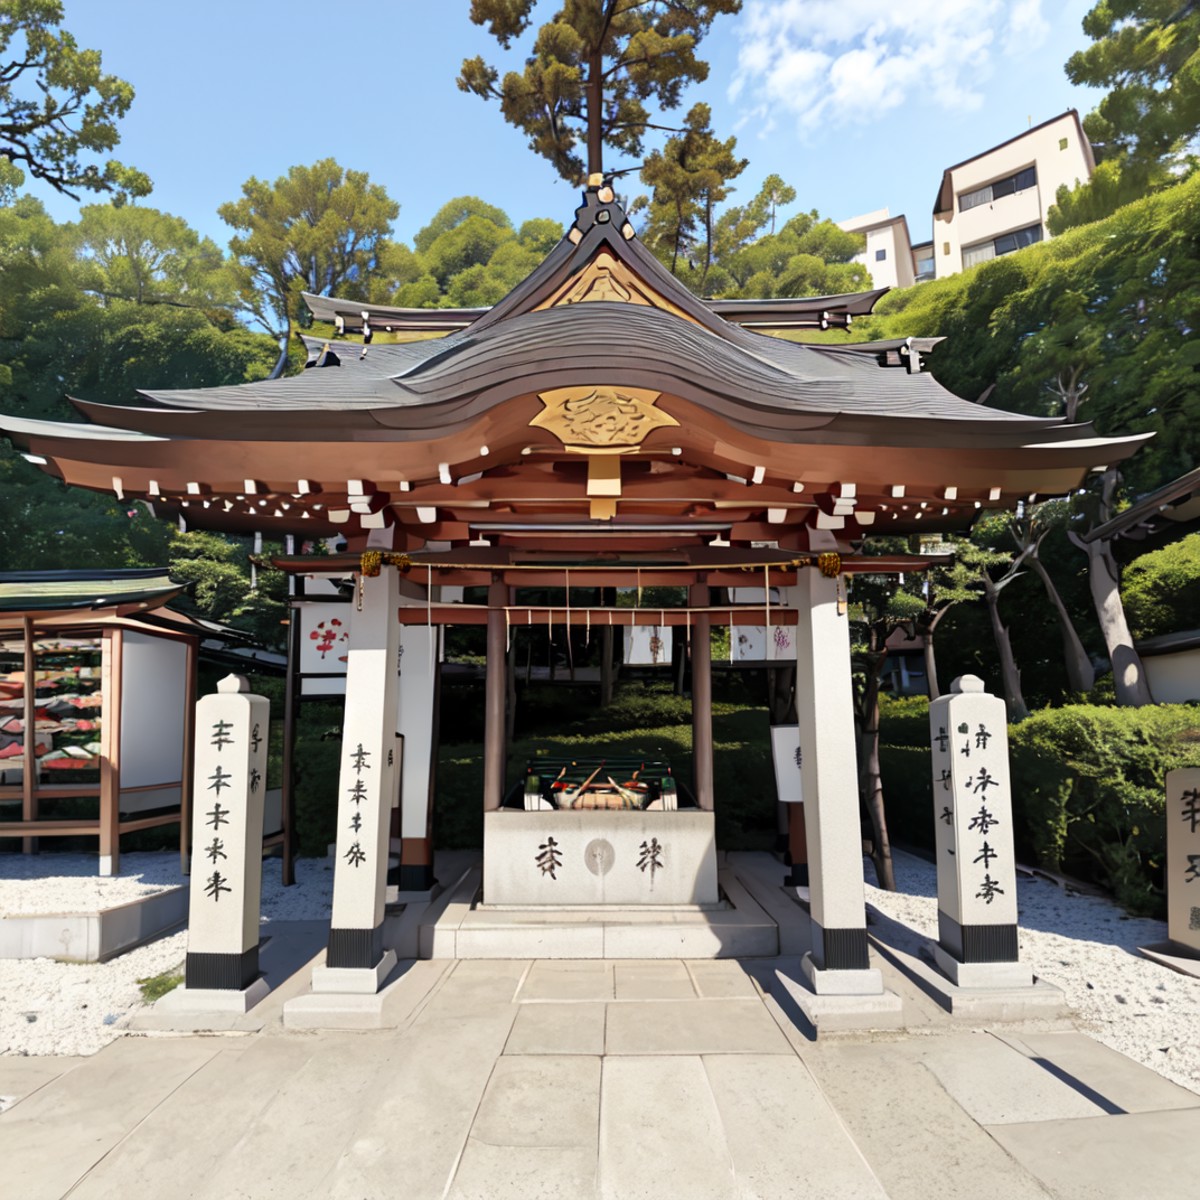 best quality, ultra-detailed, illustration,
chozuya, outdoors, scenery, shrine, tree, day, rope, shimenawa, sky, architect...